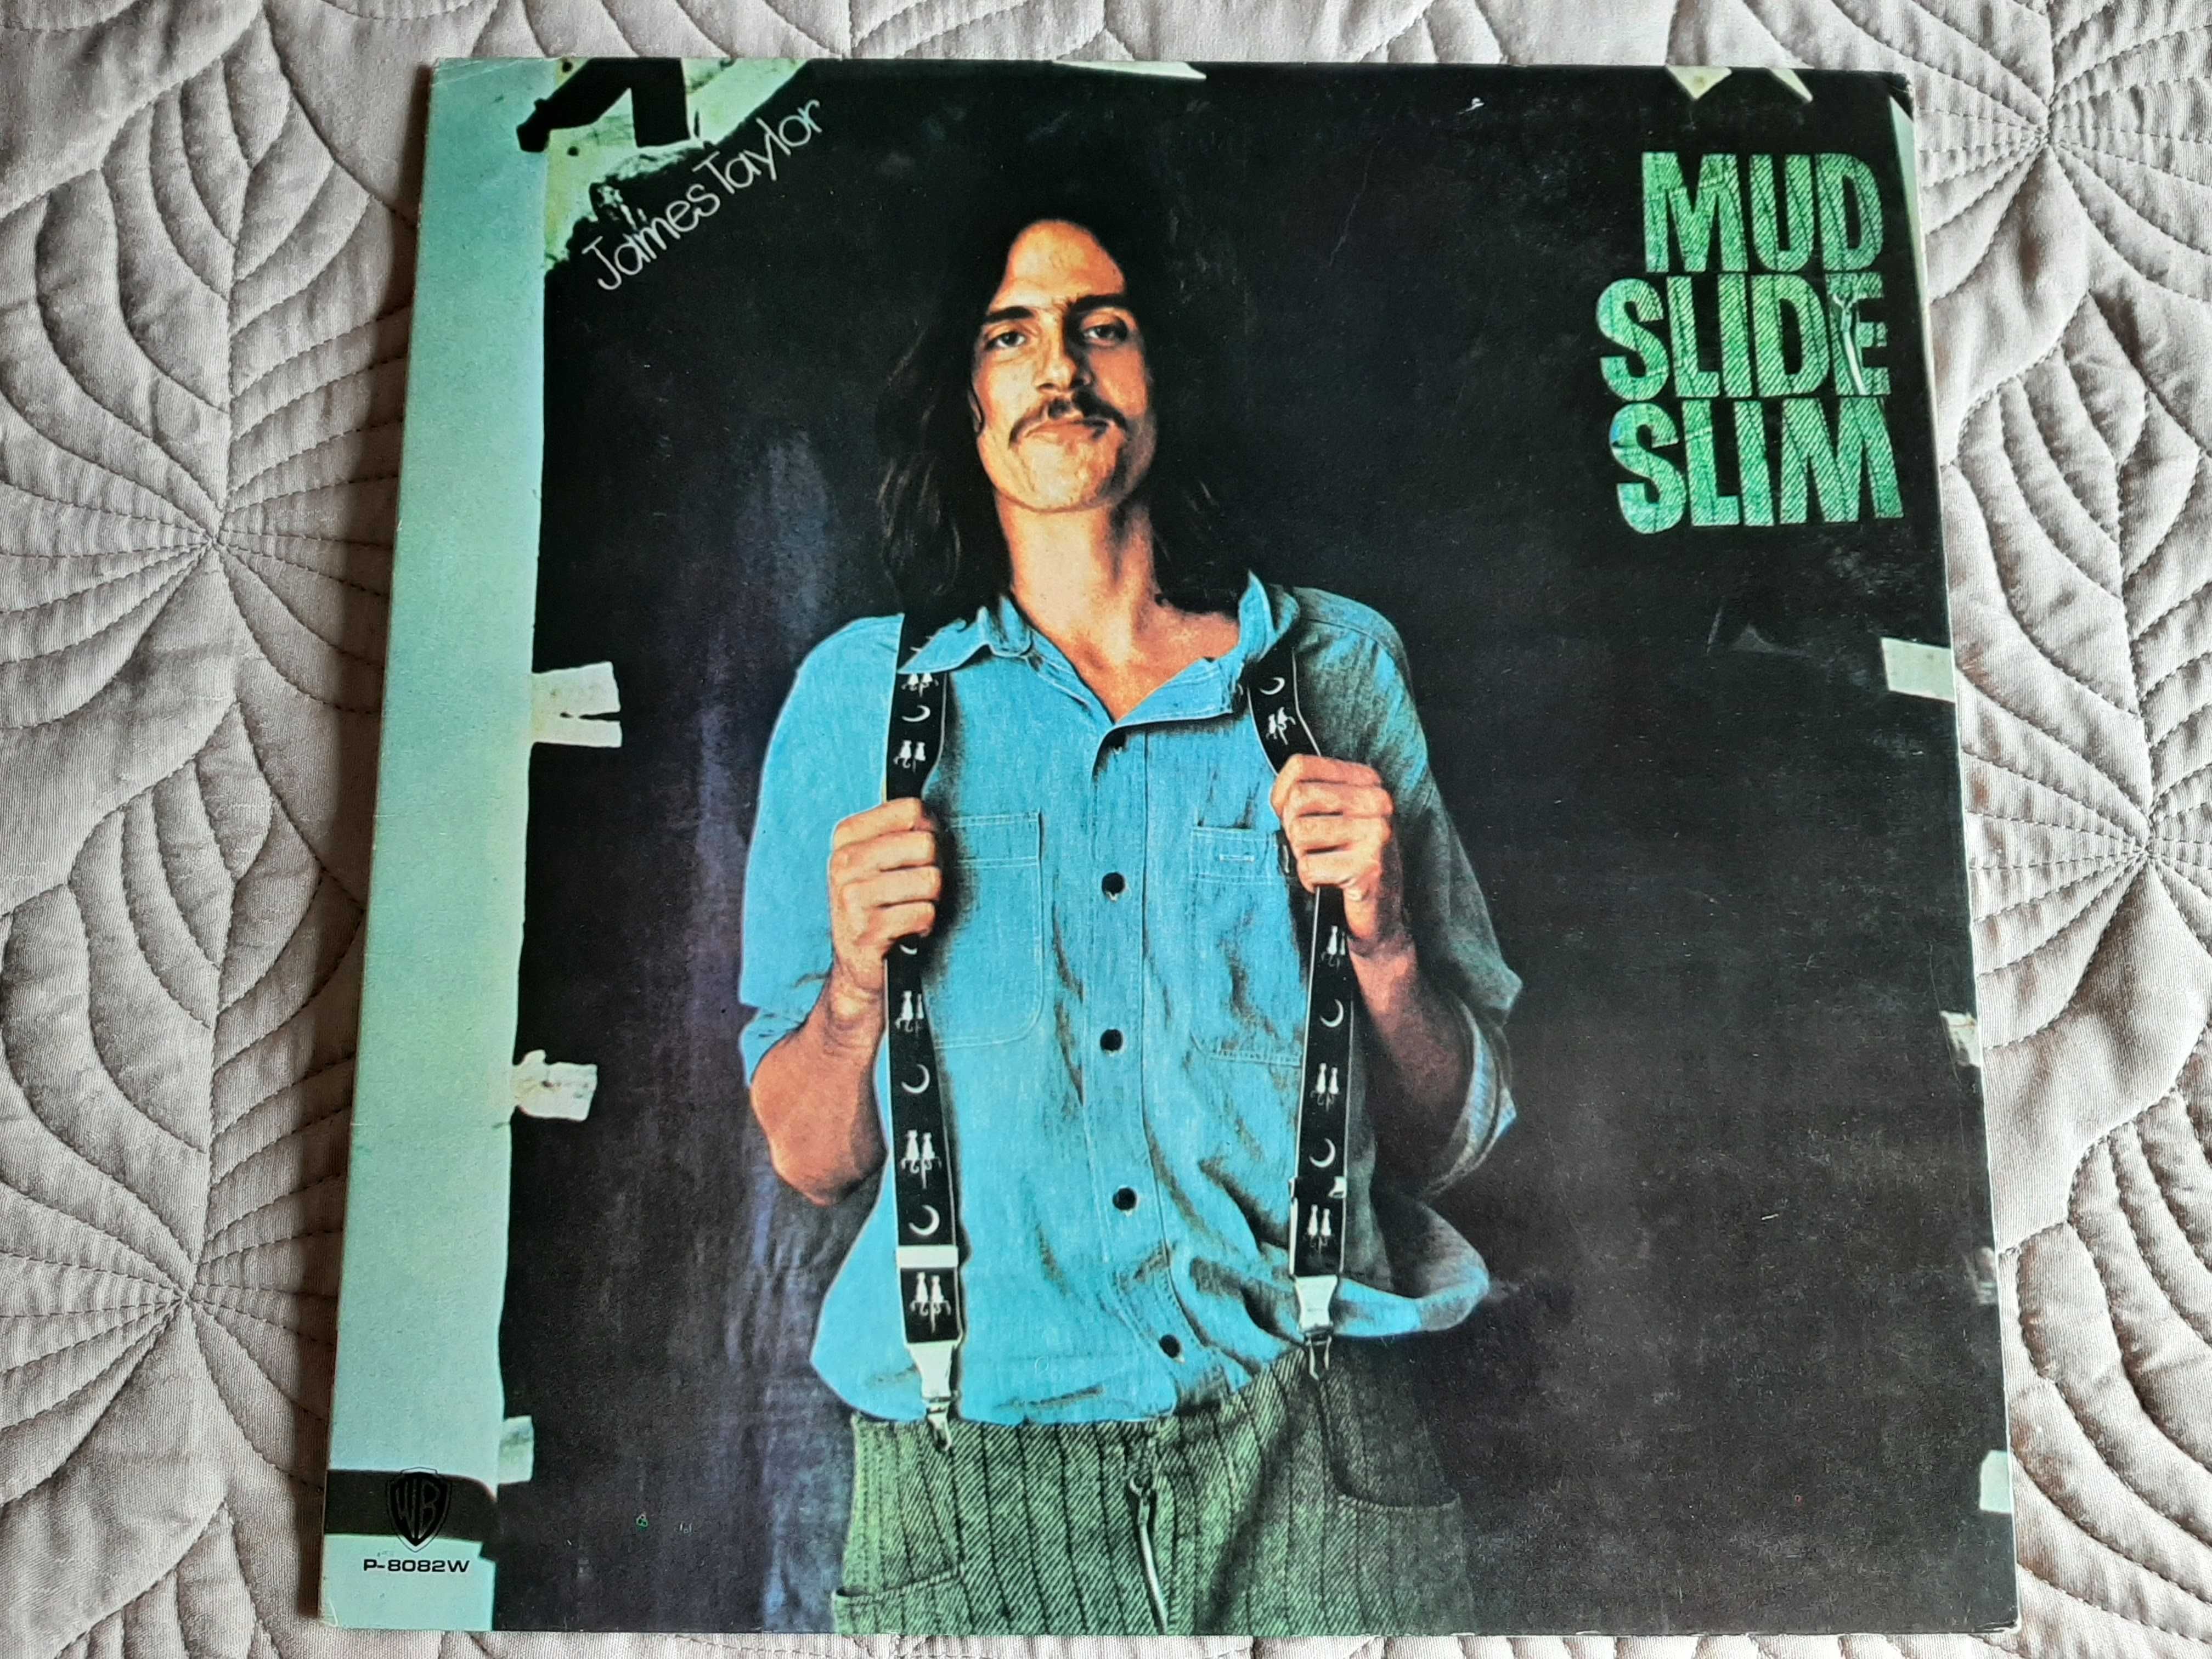 James Taylor - Mud Slide Slim - Japão - Vinil LP